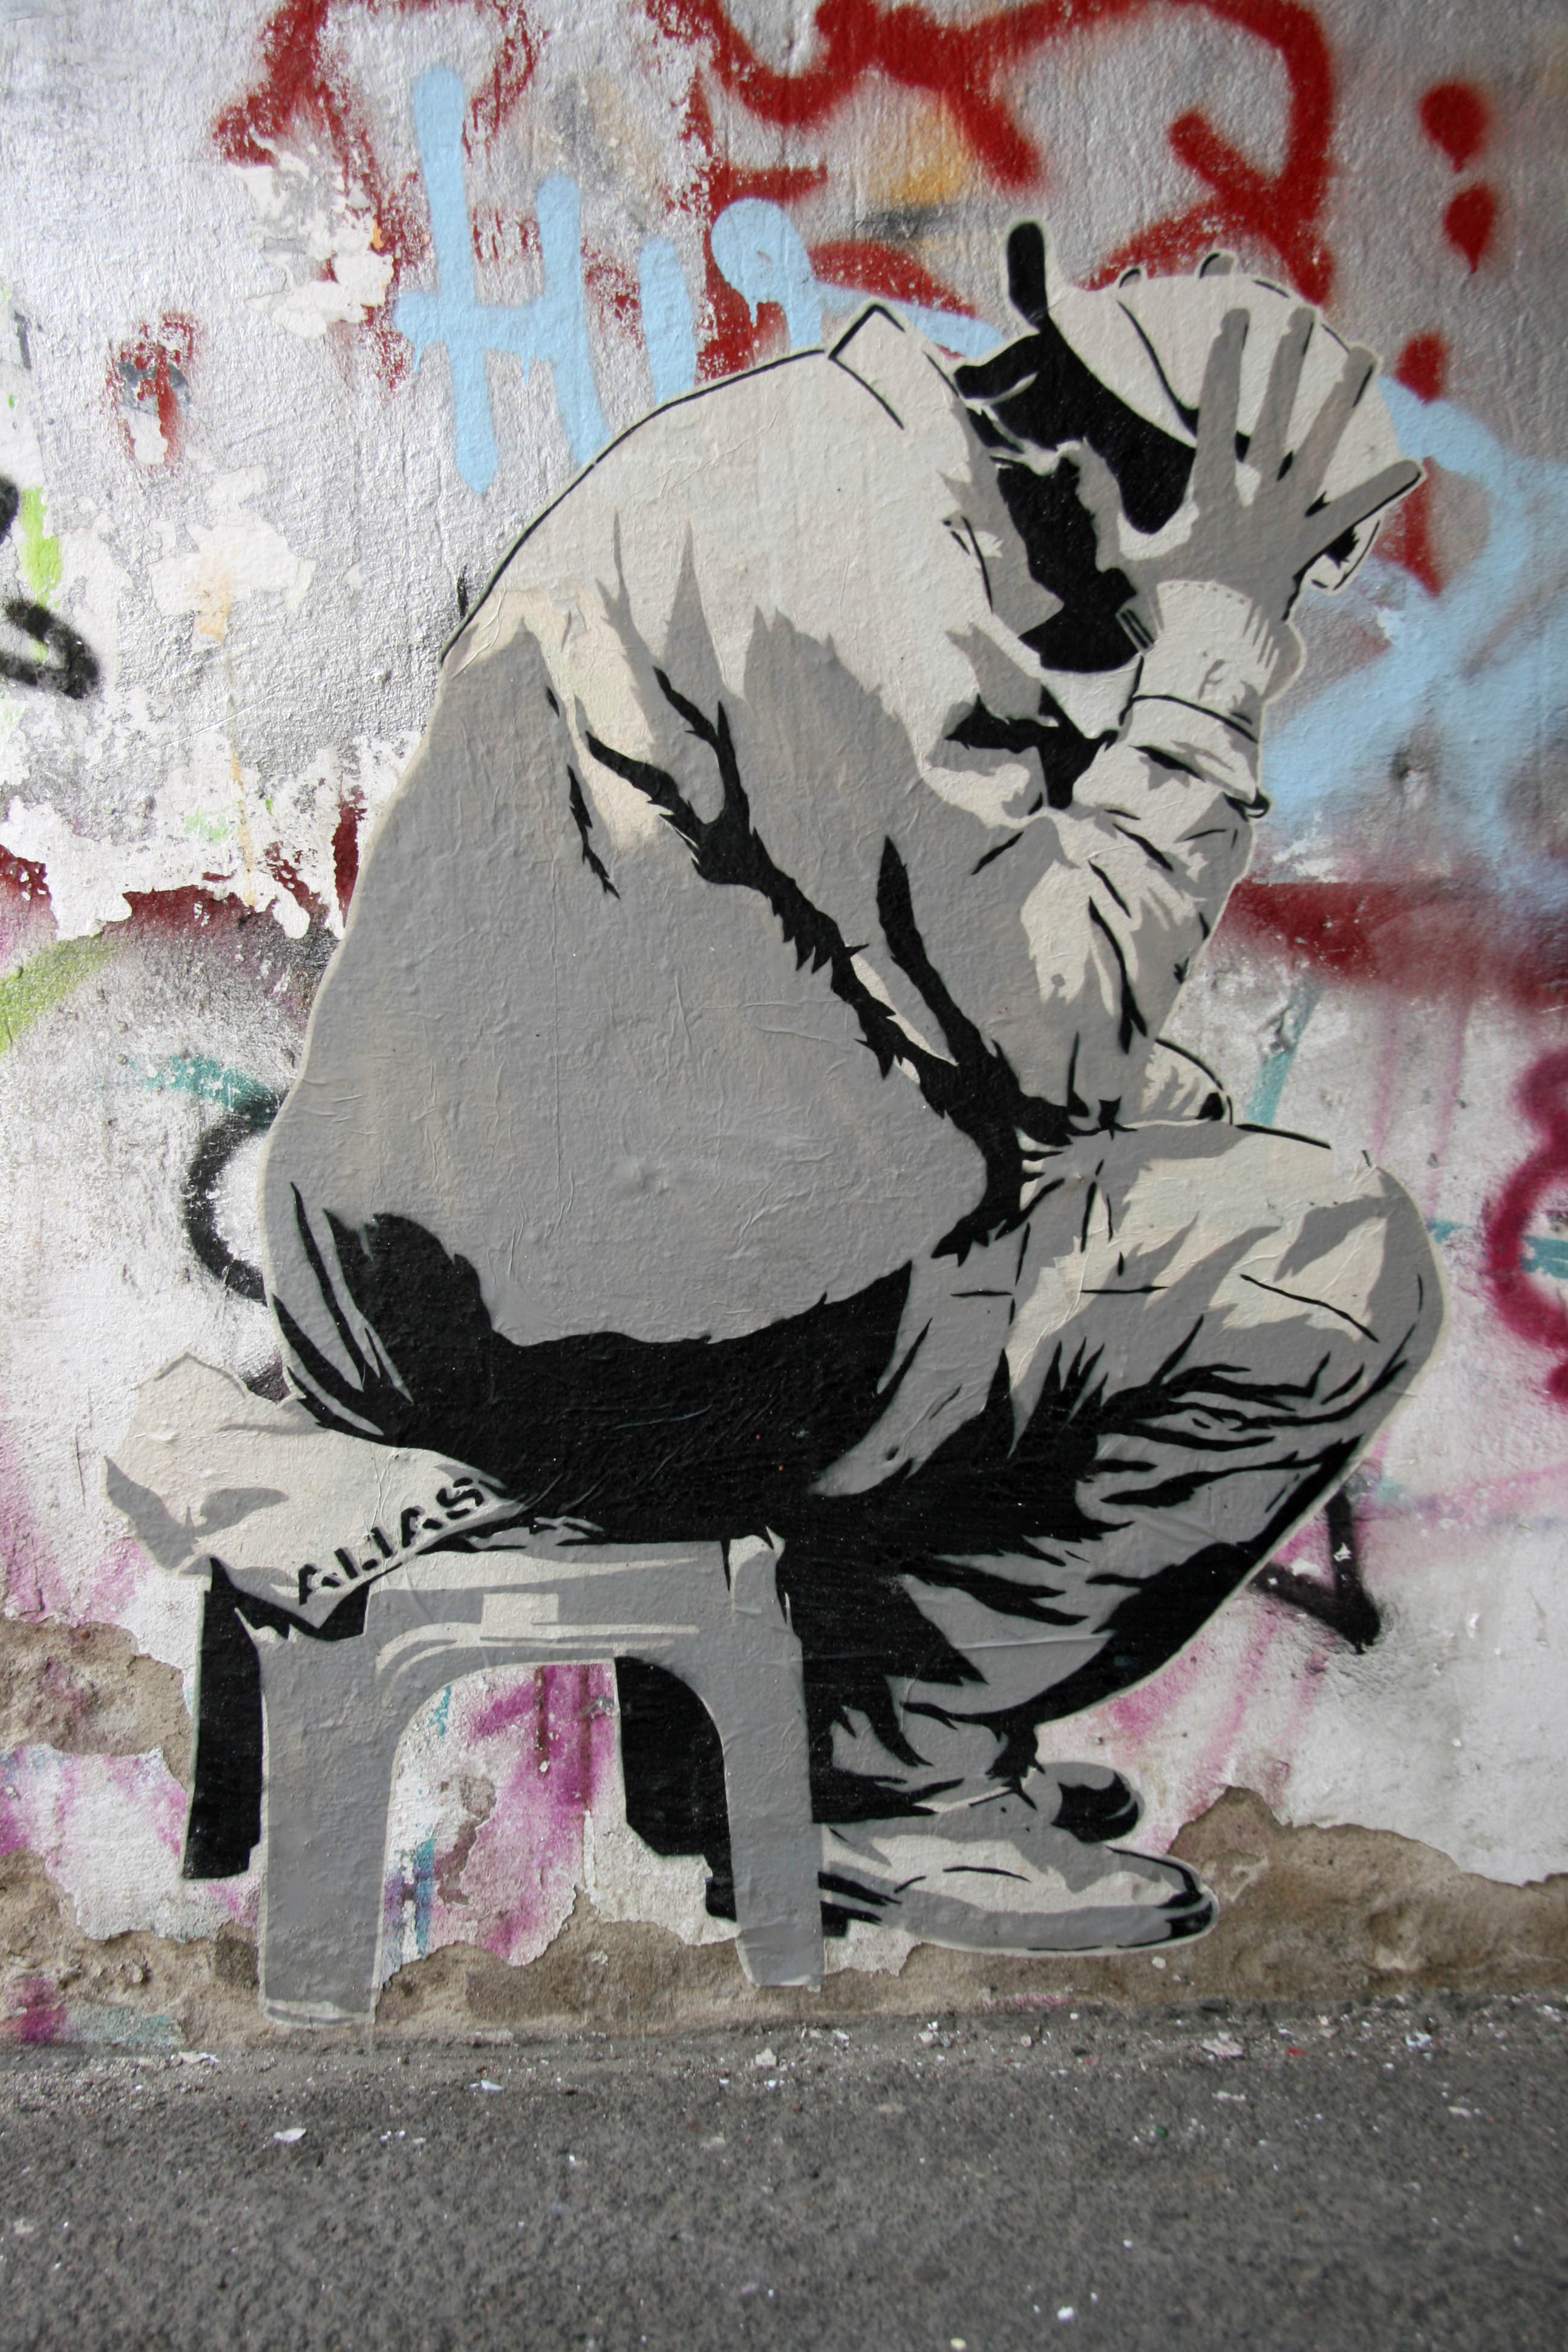 Man On A Stool: Street Art by ALIAS in Berlin